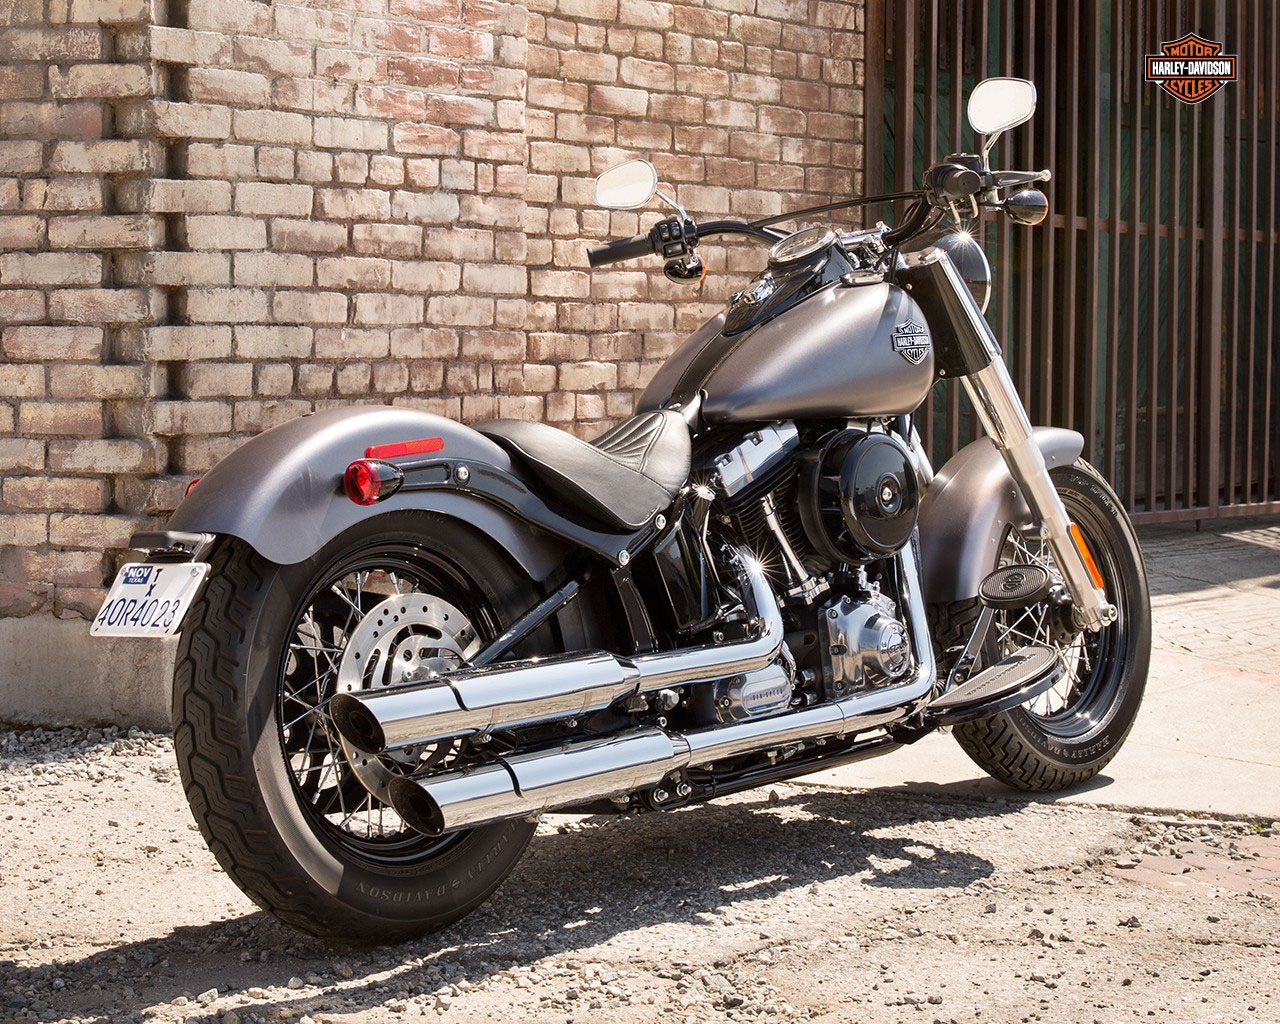 Harley-Davidson Softail Slim #3